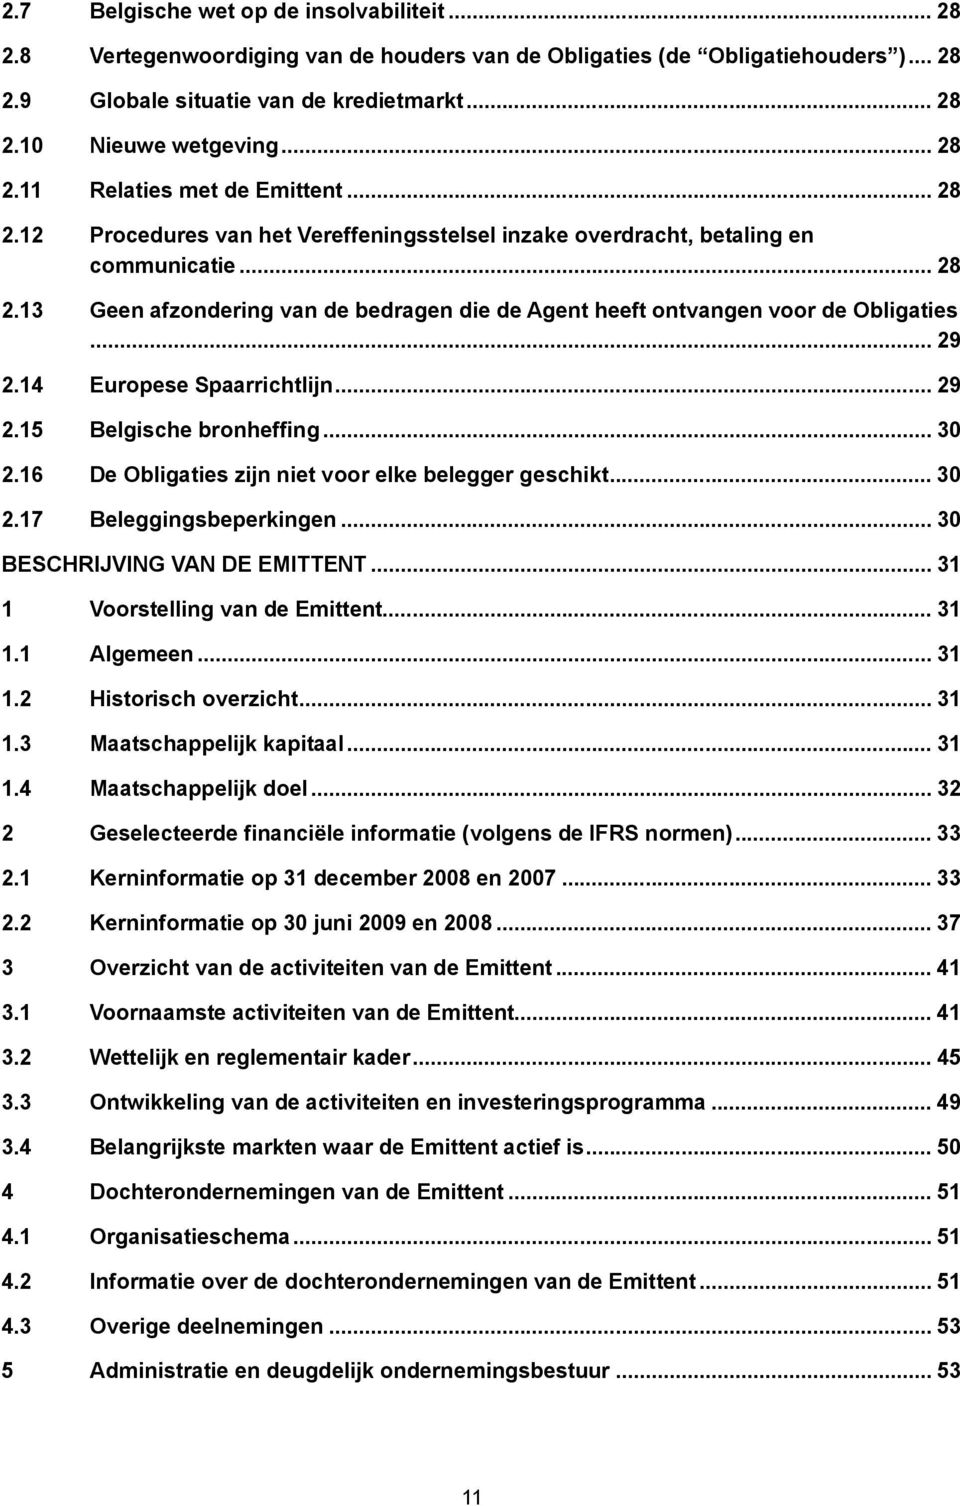 .. 29 2.14 Europese Spaarrichtlijn... 29 2.15 Belgische bronheffing... 30 2.16 De Obligaties zijn niet voor elke belegger geschikt... 30 2.17 Beleggingsbeperkingen... 30 BESCHRIJVING VAN DE EMITTENT.